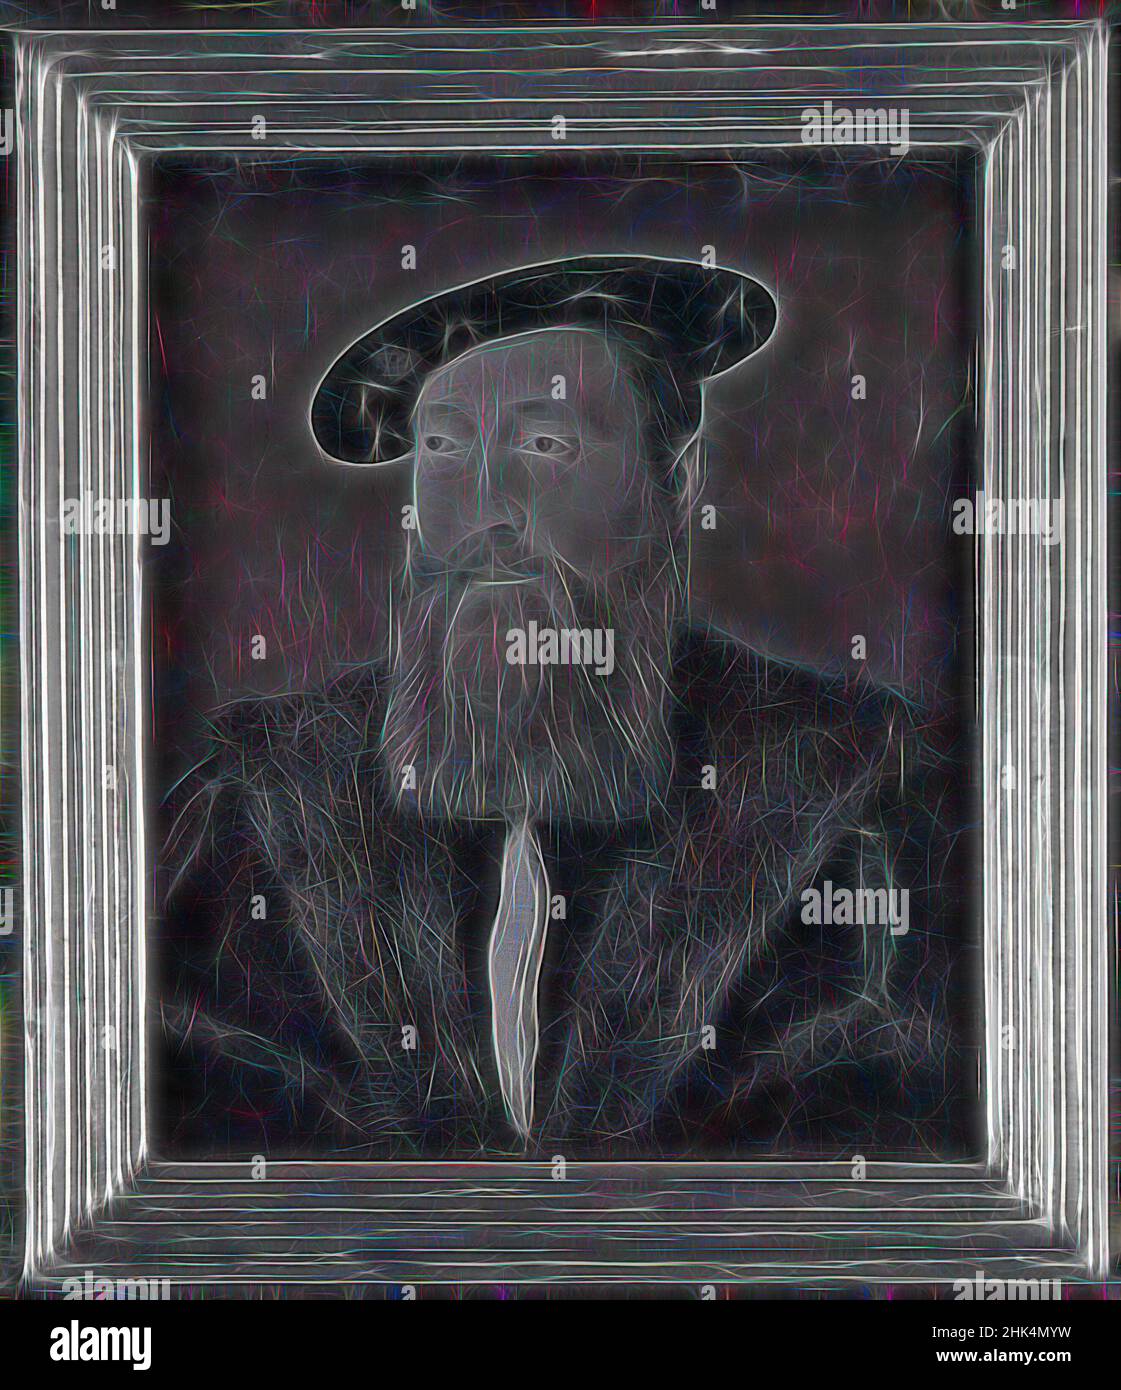 Inspirado en el retrato de un hombre en un sombrero de terciopelo, Corneille de Lyon, holandés,1500/10-1575, activo en Francia, Tempera en el panel, 7 5/8 x 6 3/4 pulg., 19,4 x 17,1 cm, Reimaginado por Artotop. Arte clásico reinventado con un toque moderno. Diseño de brillo cálido y alegre y luminosidad e radiación de rayos de luz. Fotografía inspirada en el surrealismo y el futurismo, que abarca la energía dinámica de la tecnología moderna, el movimiento, la velocidad y la revolución de la cultura Foto de stock